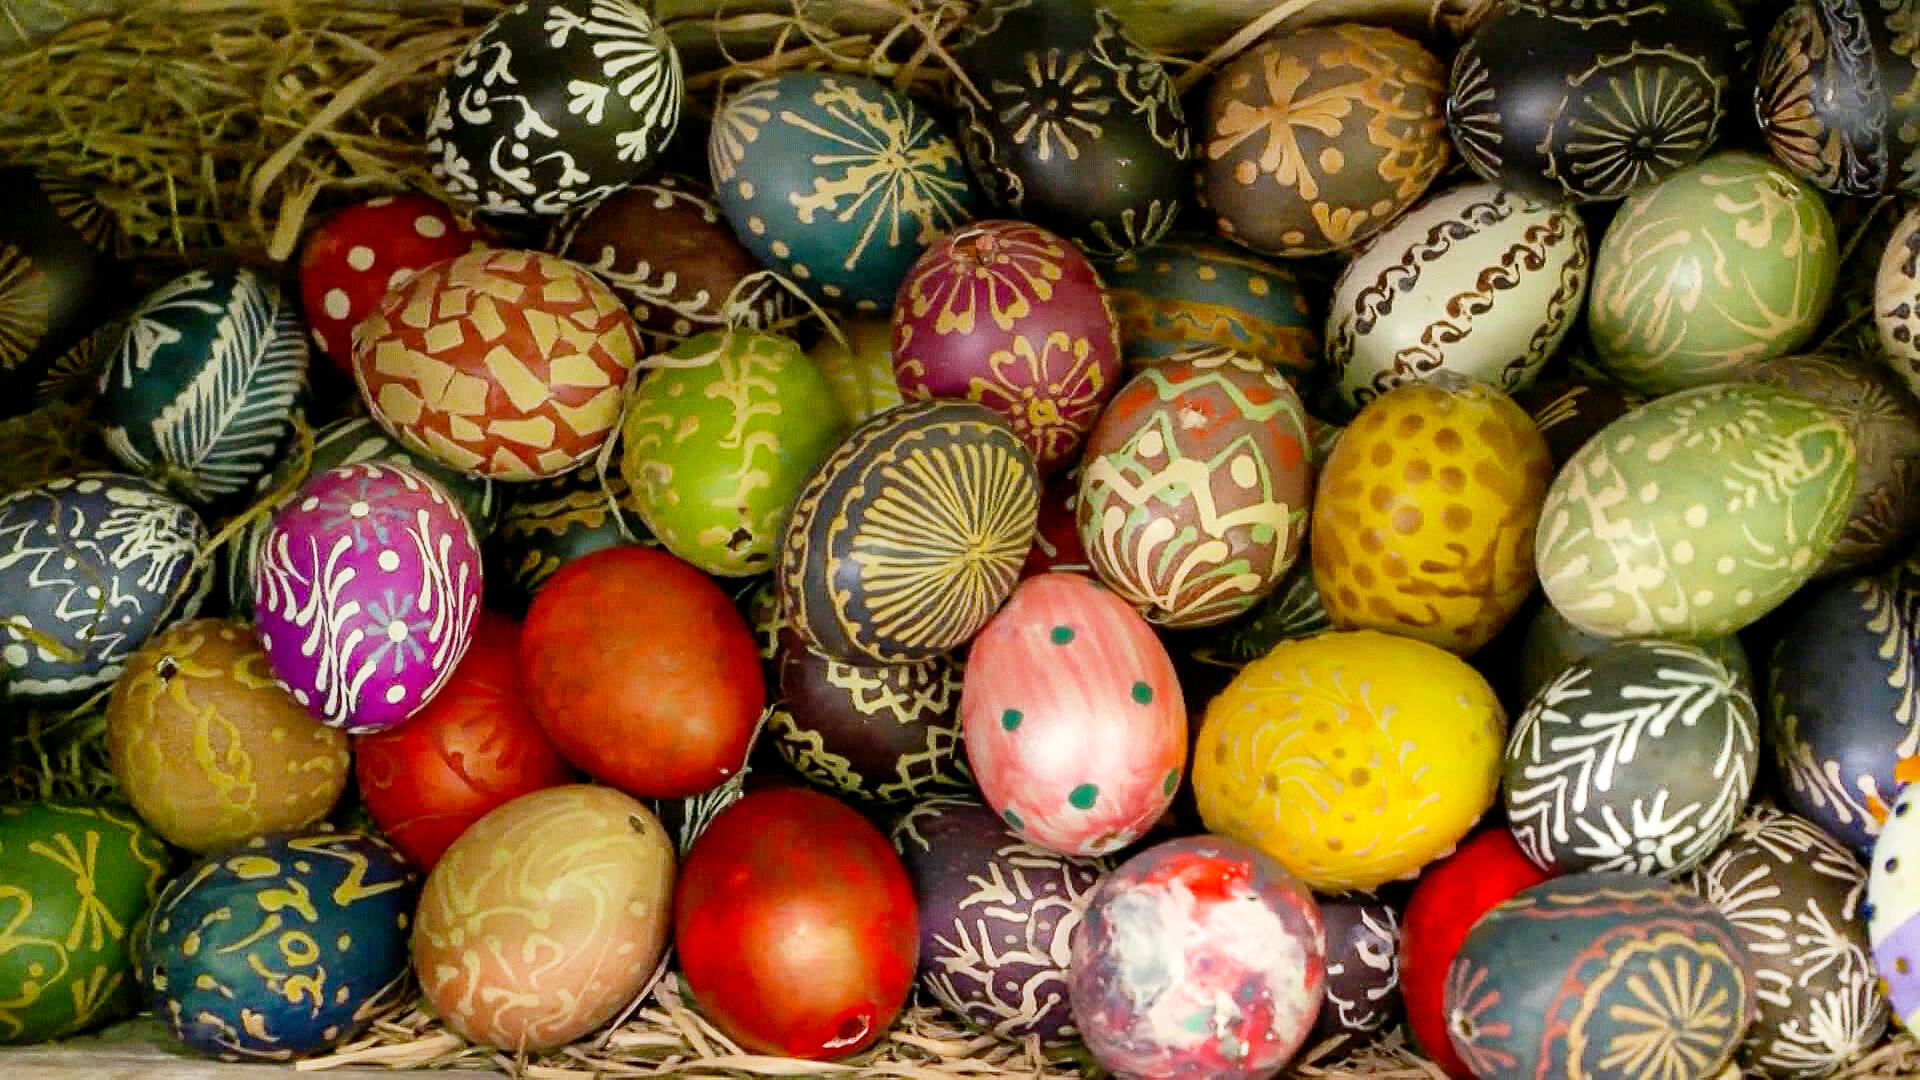 Пасхальные яйца пополнили коллекцию сельского музея в Беларуси